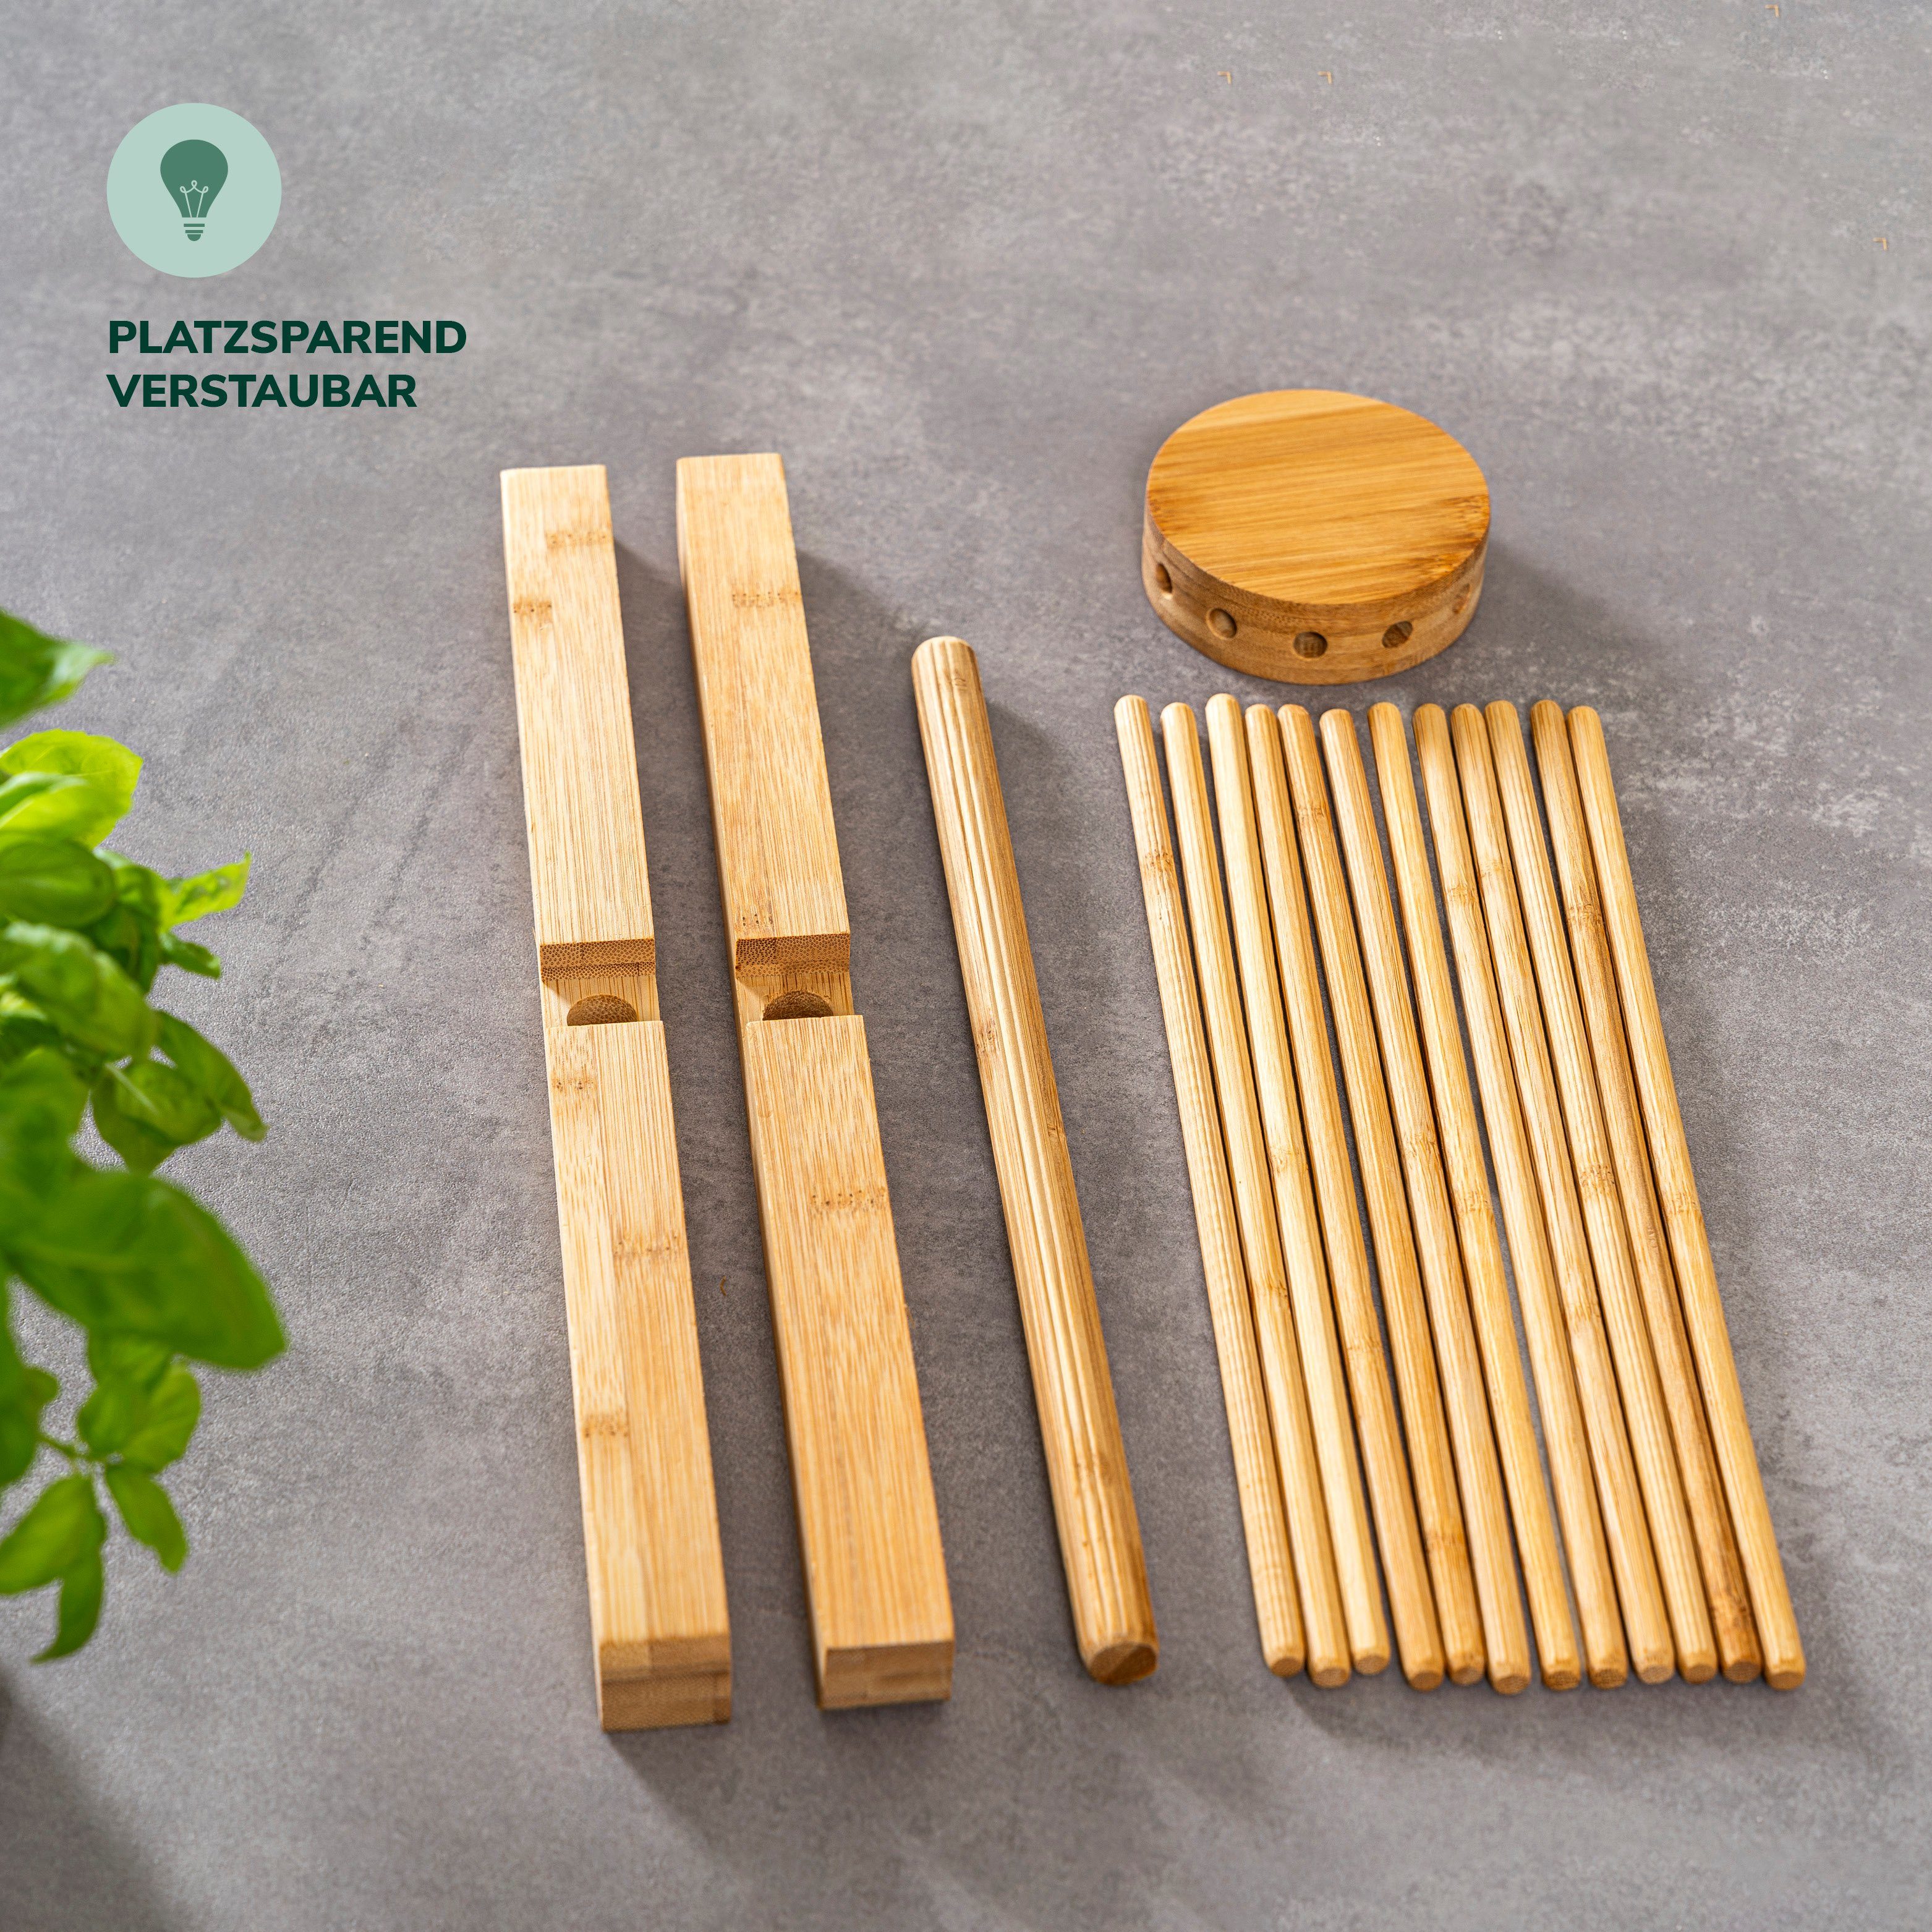 bremermann selbstgemachte Nudelständer Nudeltrockner – aus für Pasta, faltbar Bambus